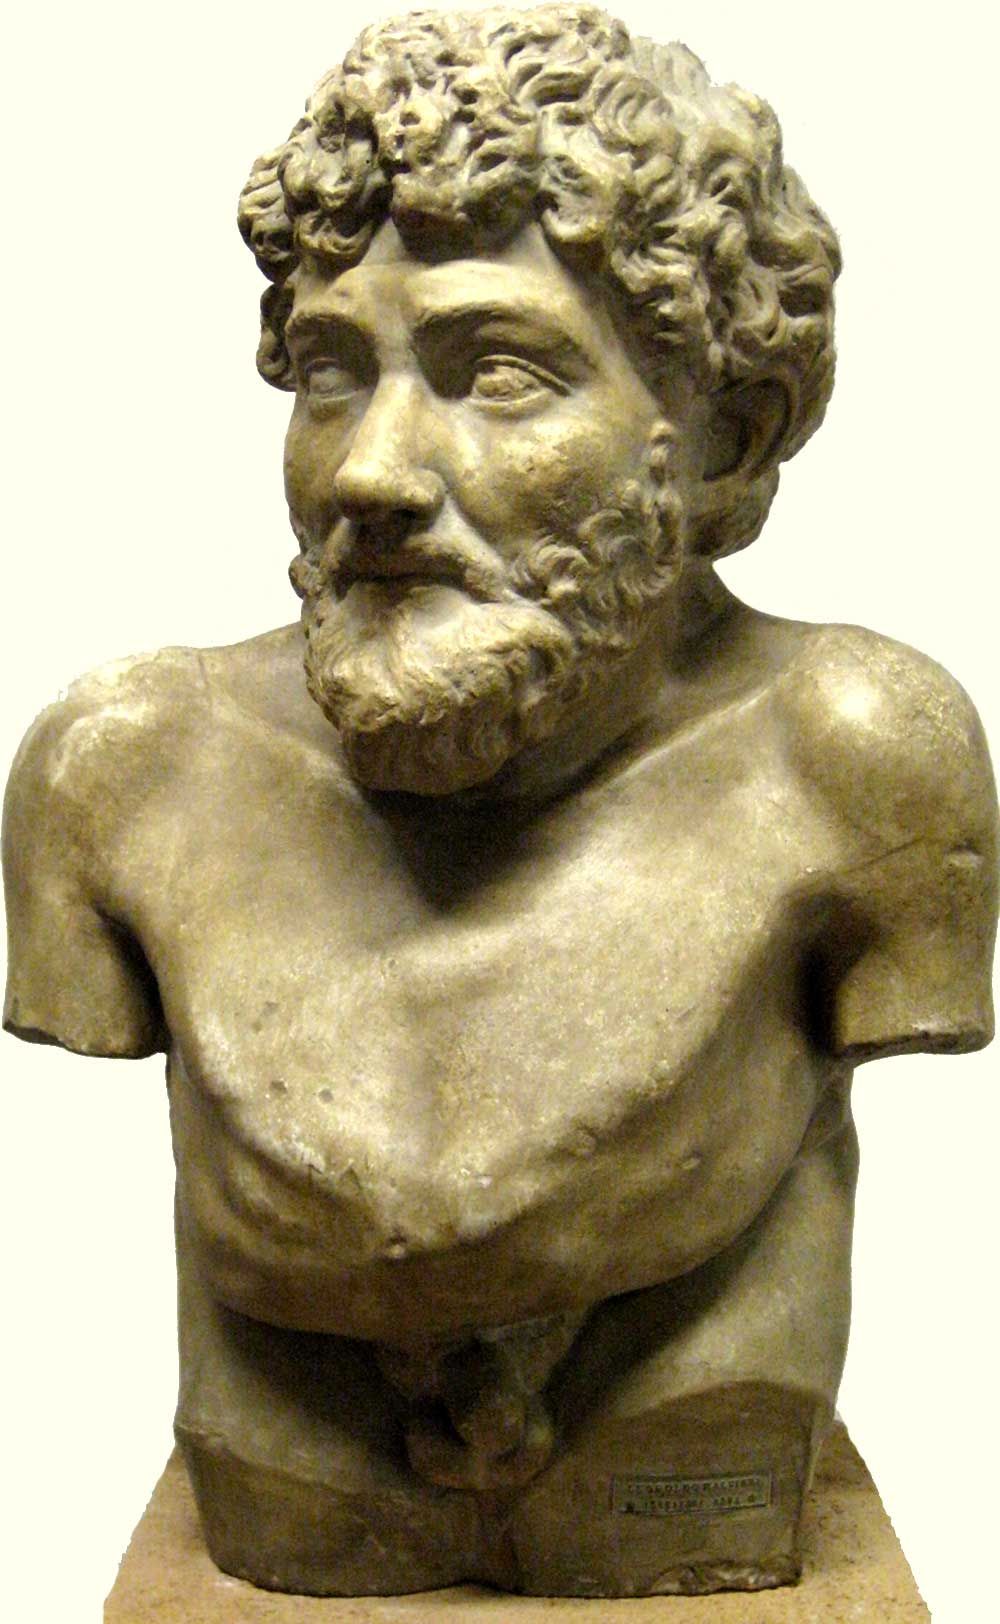 Эзоп. Легендарный древнегреческий поэт-баснописец. Предположительно жил около 600 г. до н.э.
